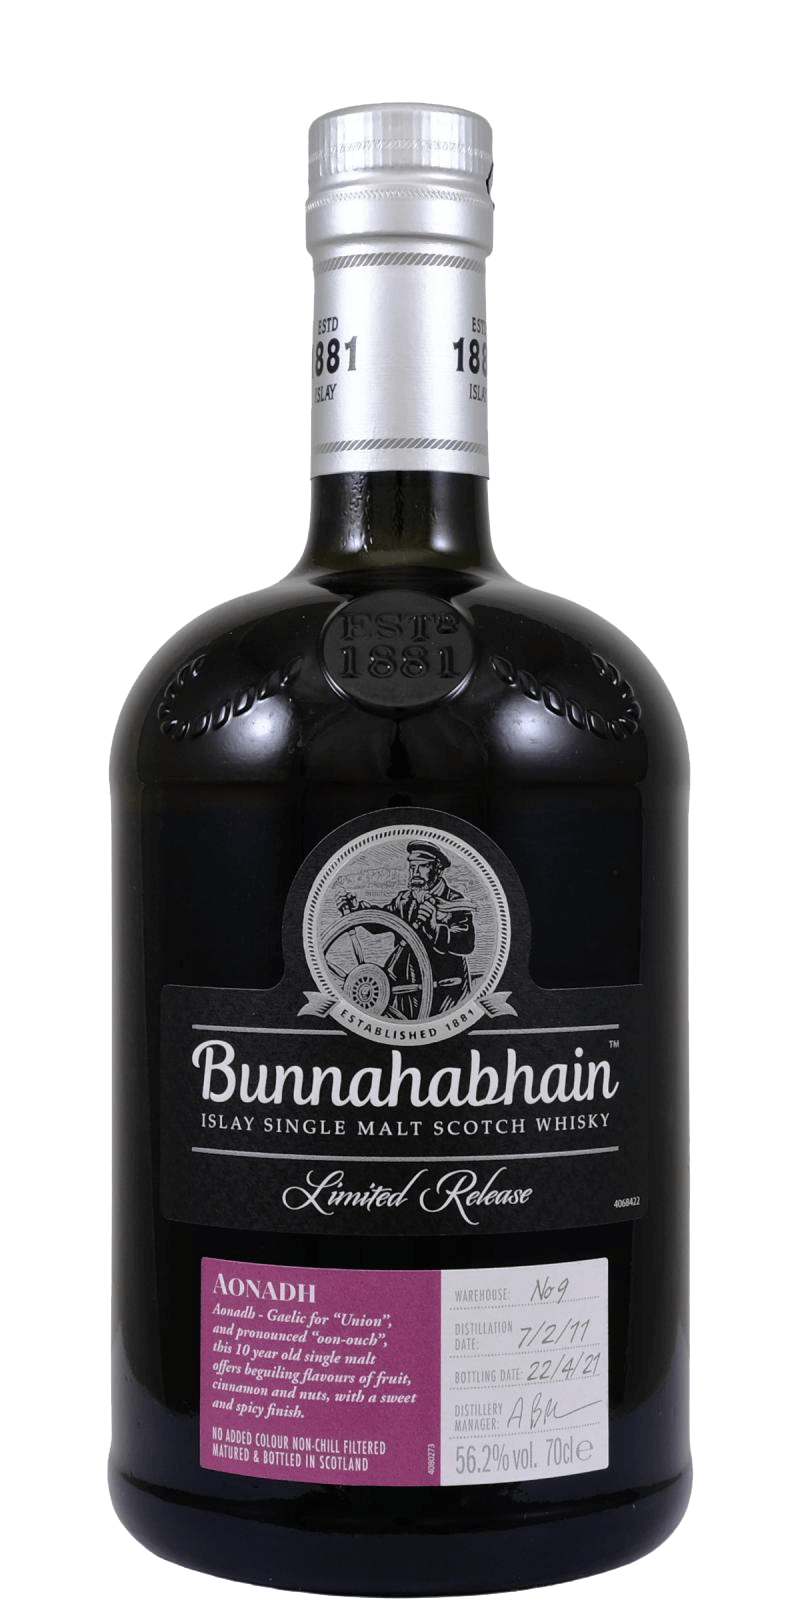 Bunnahabhain Aonadh Islay Single Malt Scotch Whisky bunnahabhain islay single malt scotch whisky 12 y o gift box